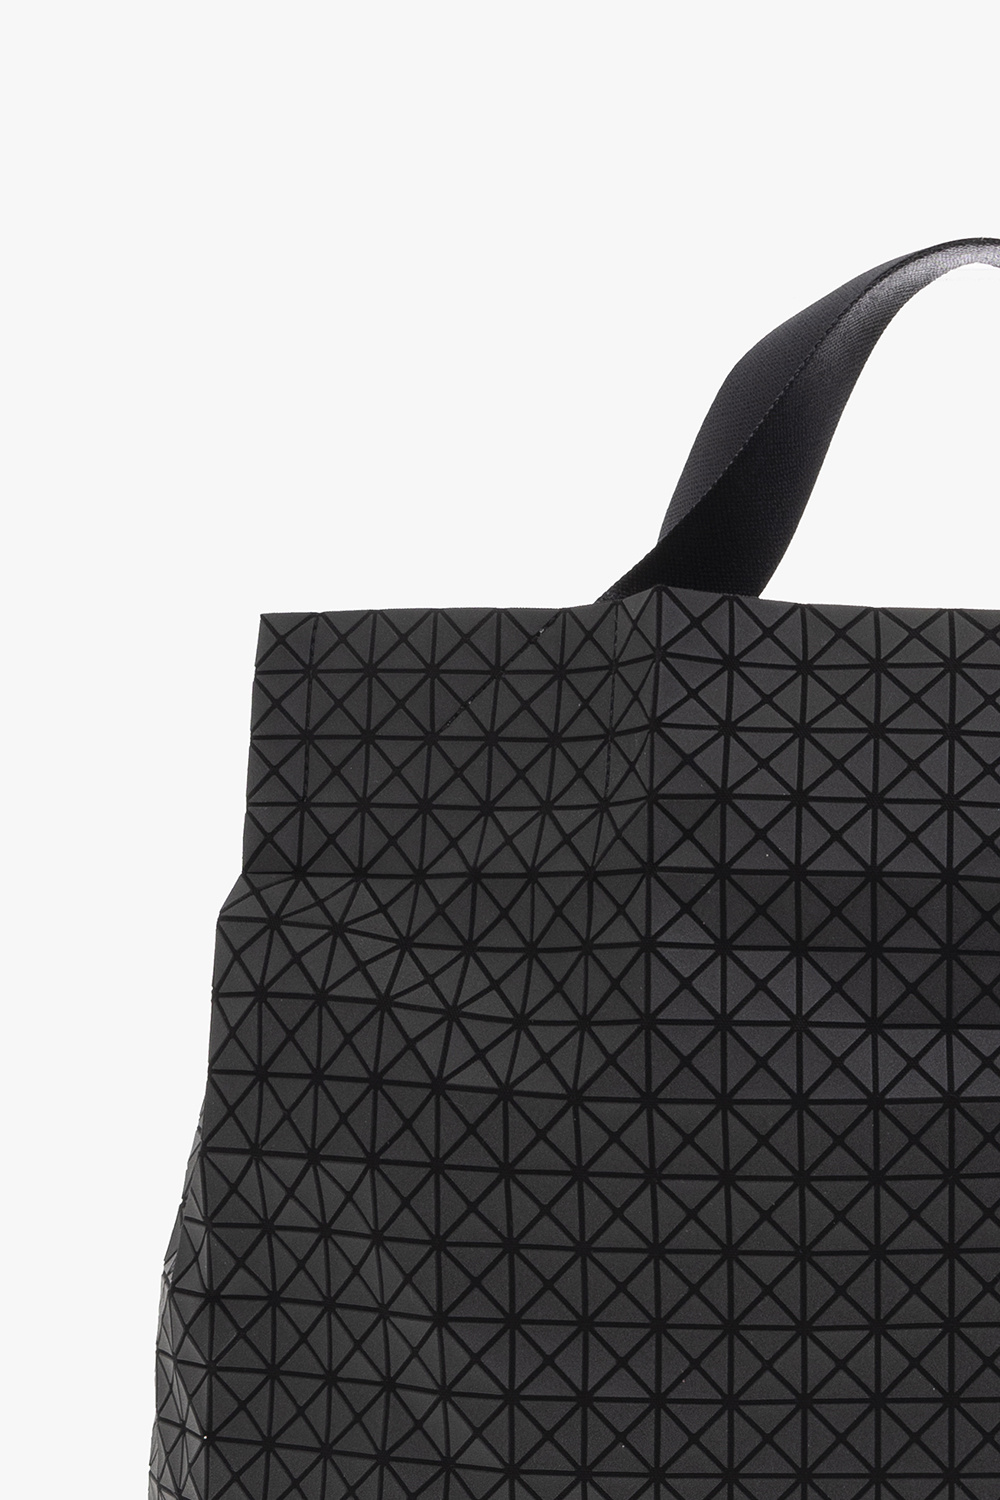 Louis Vuitton Coussin BB Bag - Vitkac shop online